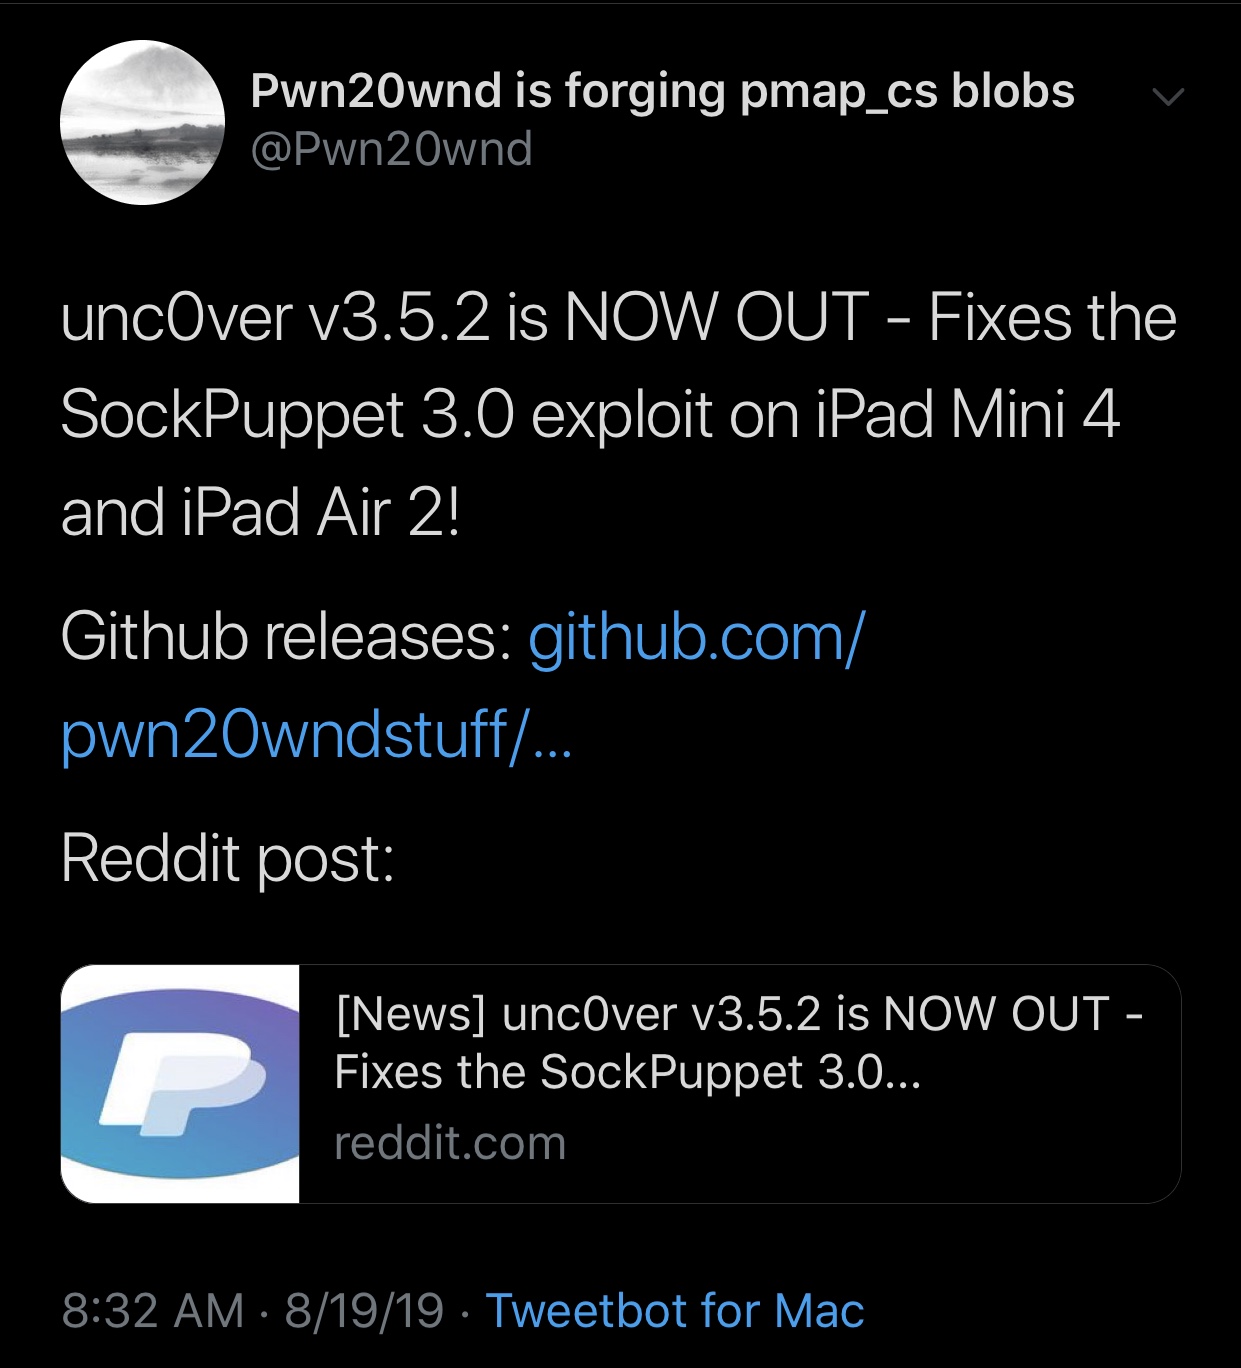 Pwn20wnd рухнул unc0ver v3.5.2 для улучшения эксплуатации Sock Puppet на некоторых iPad 3